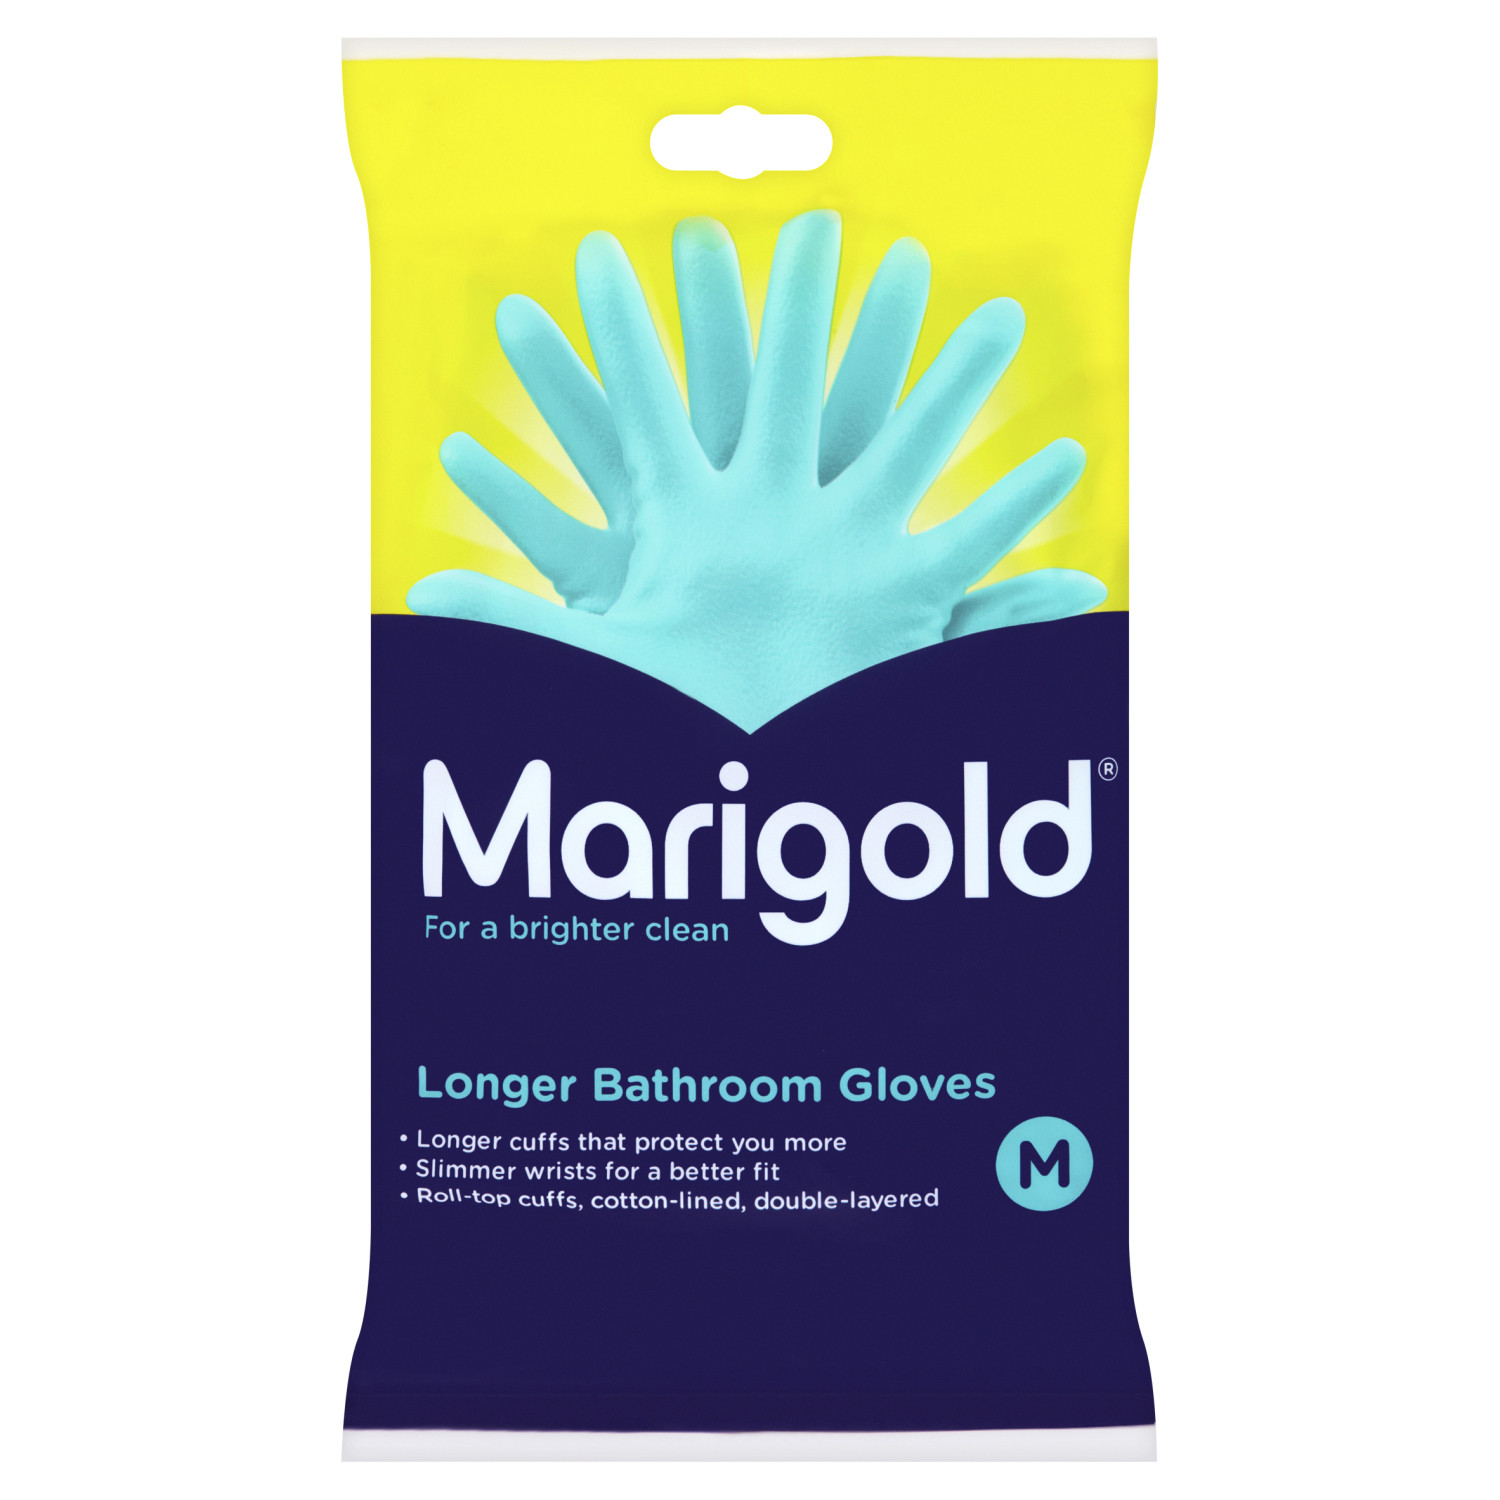 Marigold Longer Bathroom Gloves  - Blue / Large Image 1